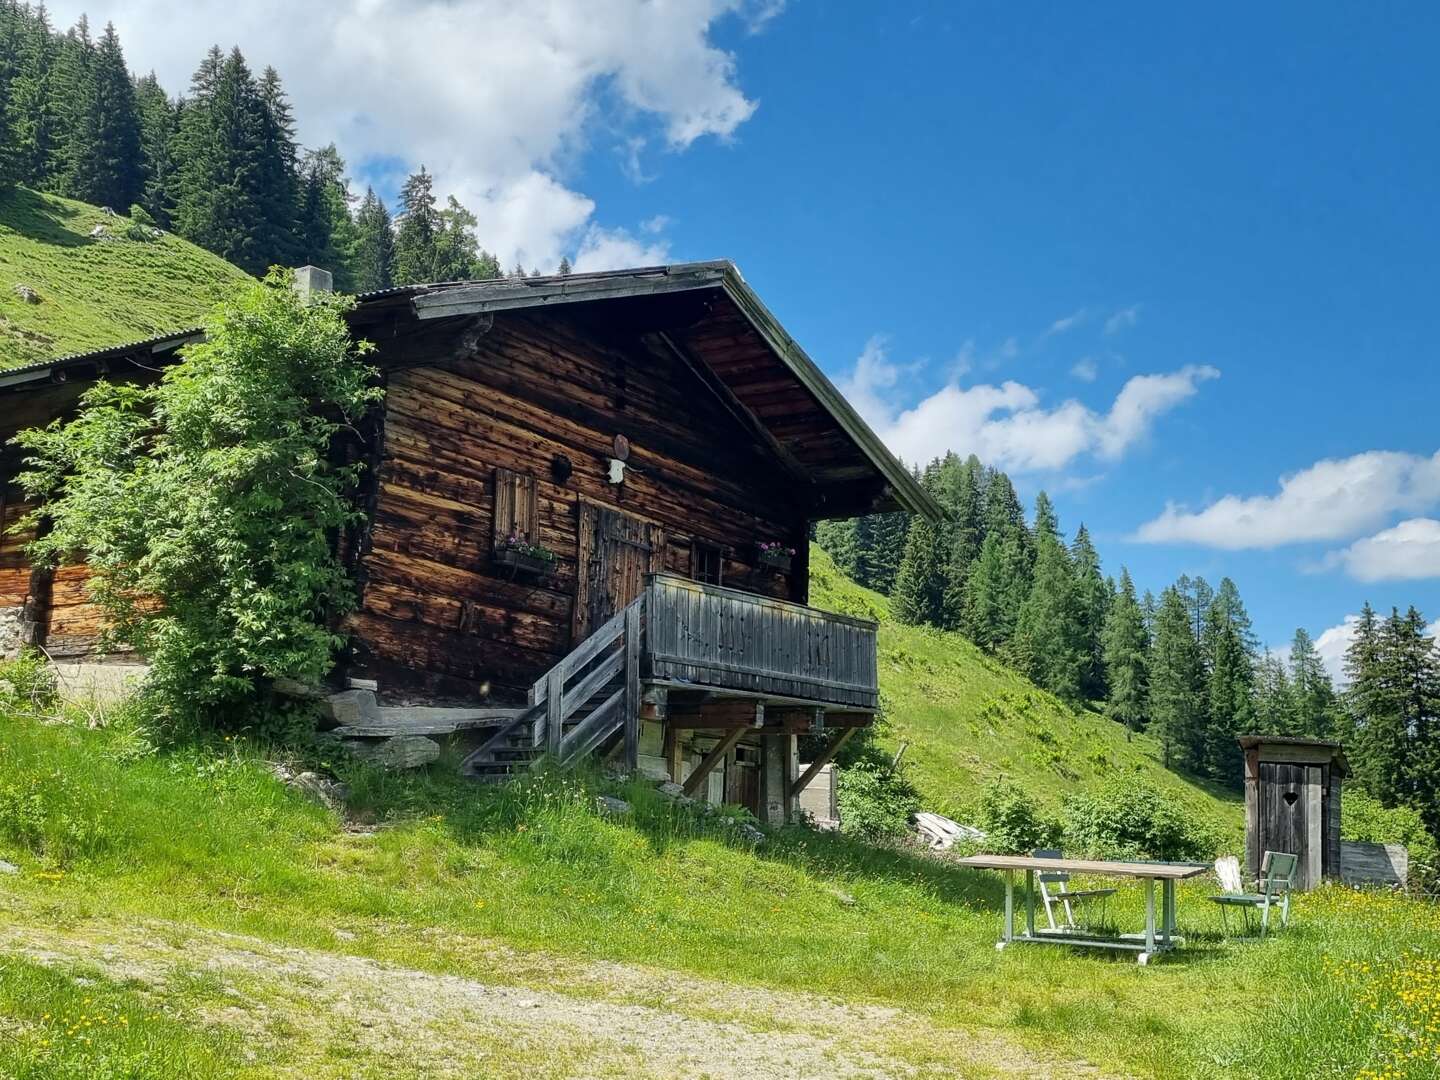 Biken & Relaxen in den Kitzbüheler Alpen | 3 Nächte